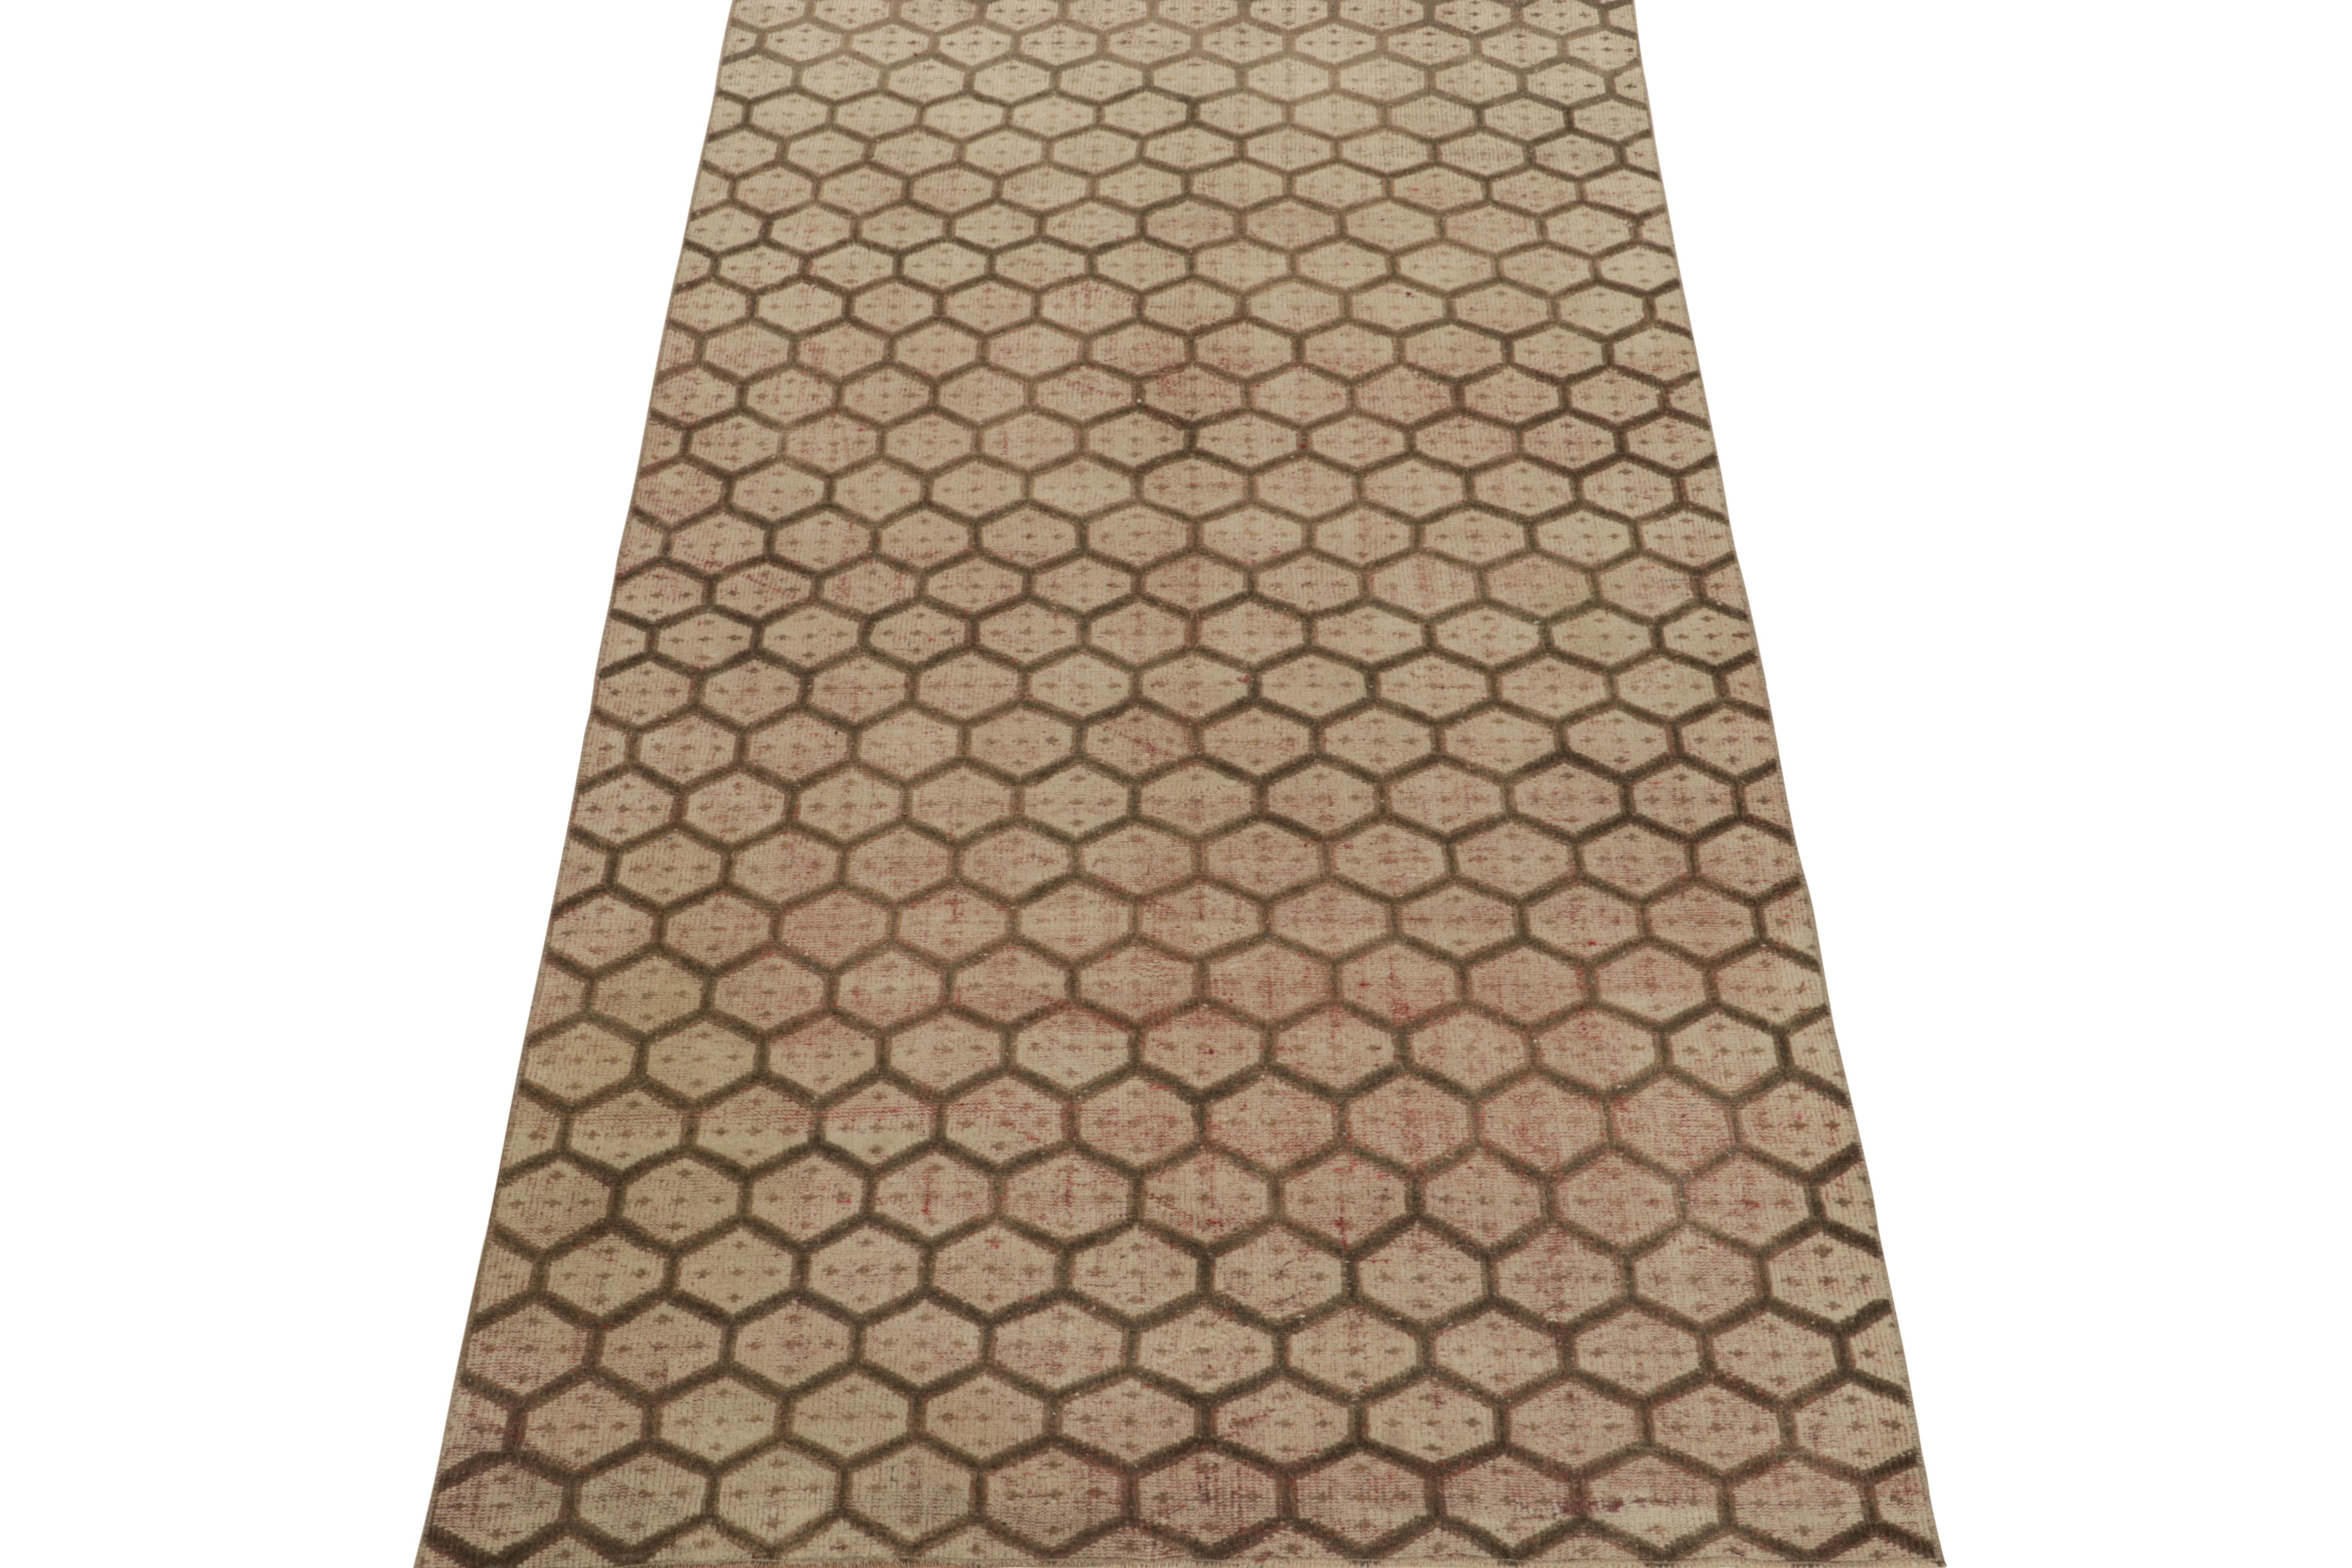 Ein 5 x 9 großer Vintage-Teppich aus der Werkstatt eines begehrten multidisziplinären türkischen Designers, der zu den neuesten Produkten der Mid-Century Pasha-Kollektion von Rug & Kilim gehört.

Das wunderschöne Zusammenspiel von Beige-Braun und